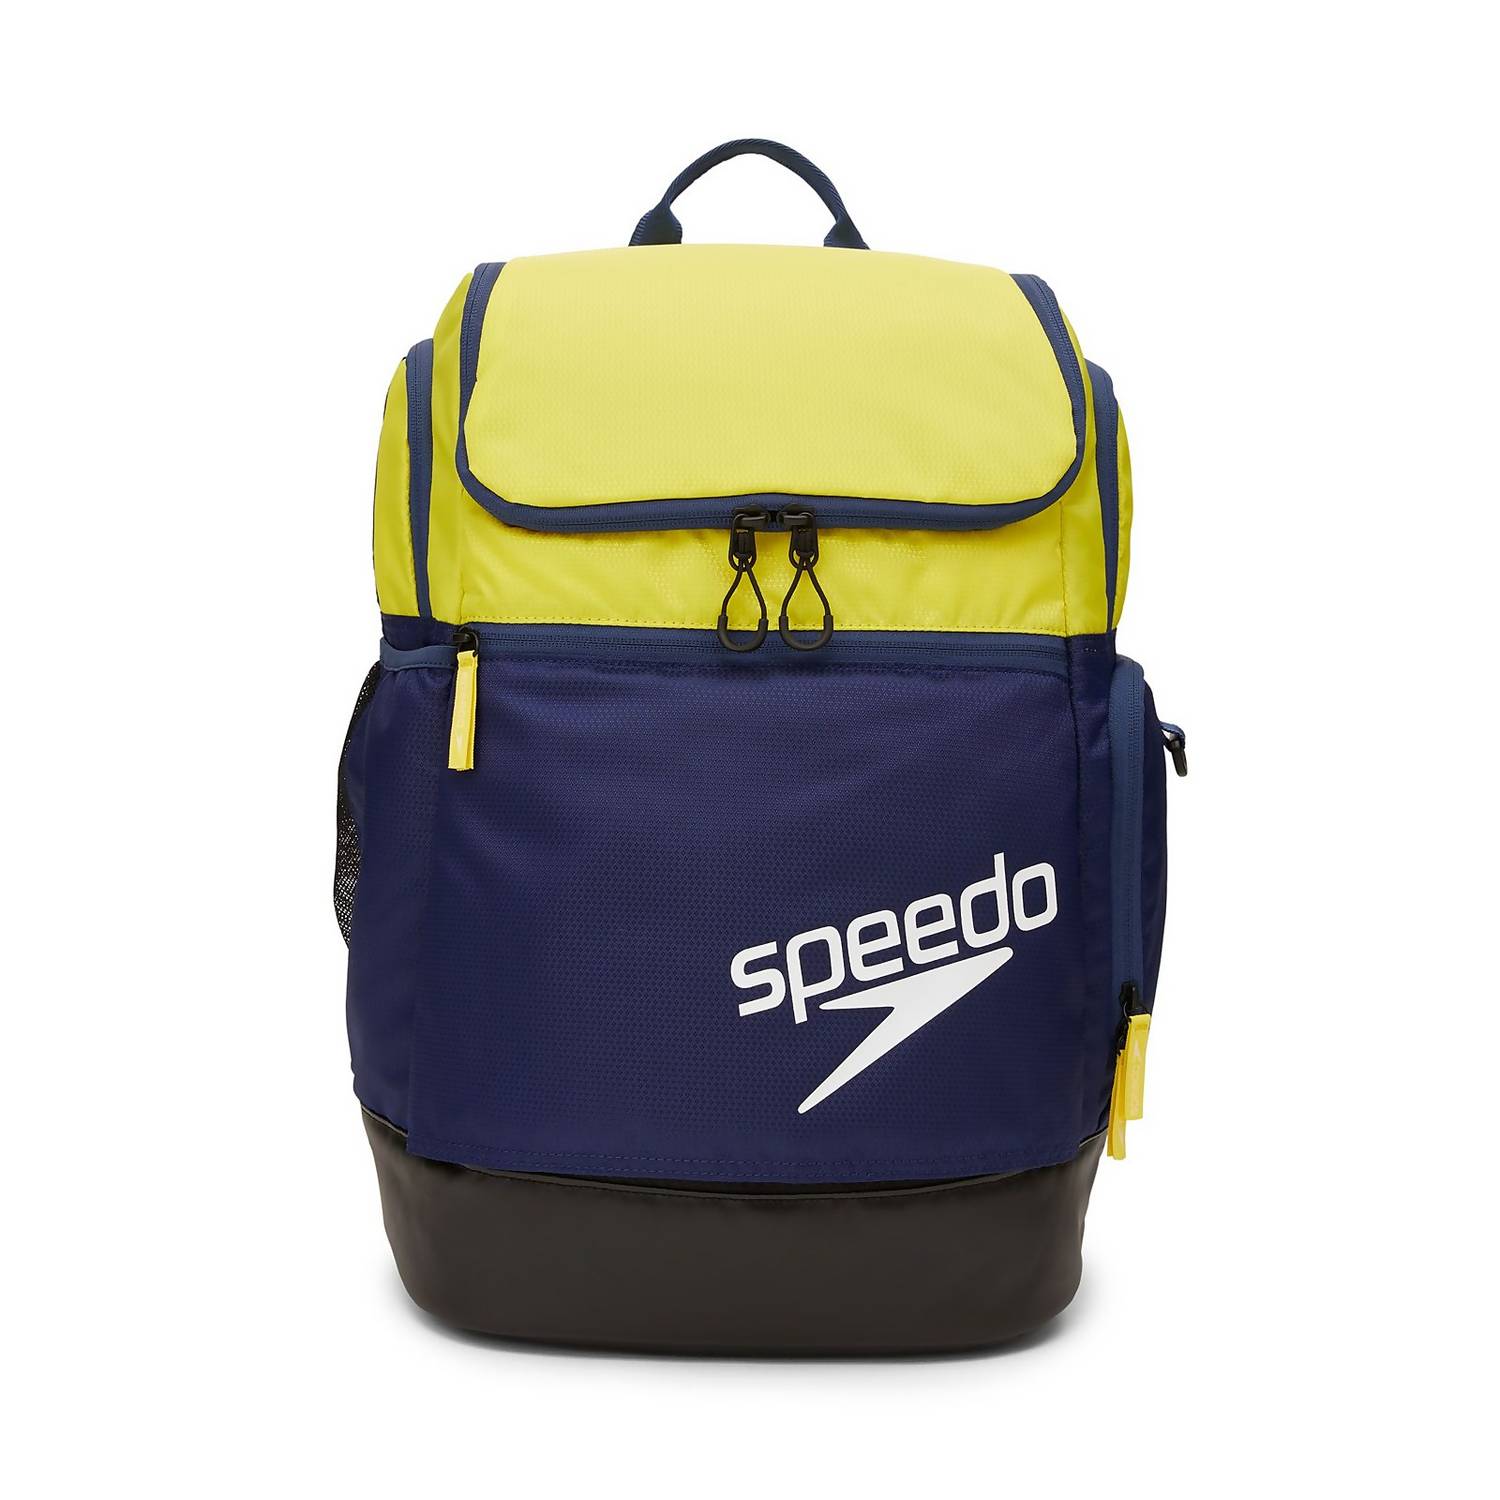 Speedo Teamster 2.0 Swim Backpack